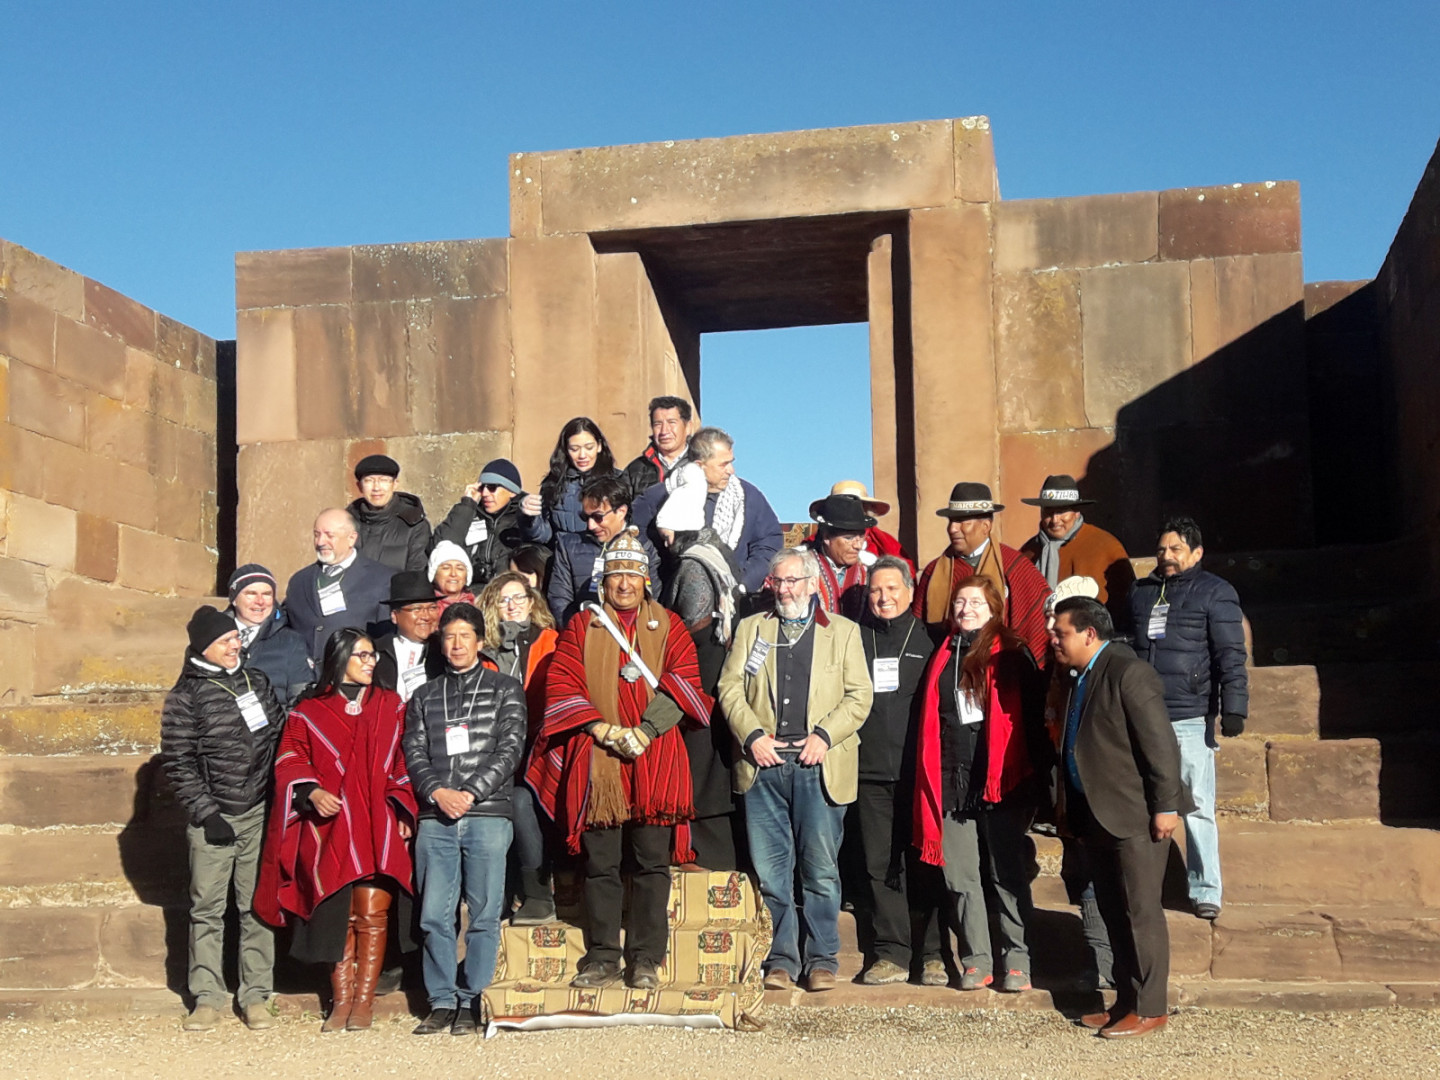 En 2019, Argentina le traspasó a Bolivia la Secretaría Pro Tempore, en una ceremonia en el sitio arqueológico Tiwanaku, con la presencia del entonces presidente boliviano, Evo Morales Ayma.